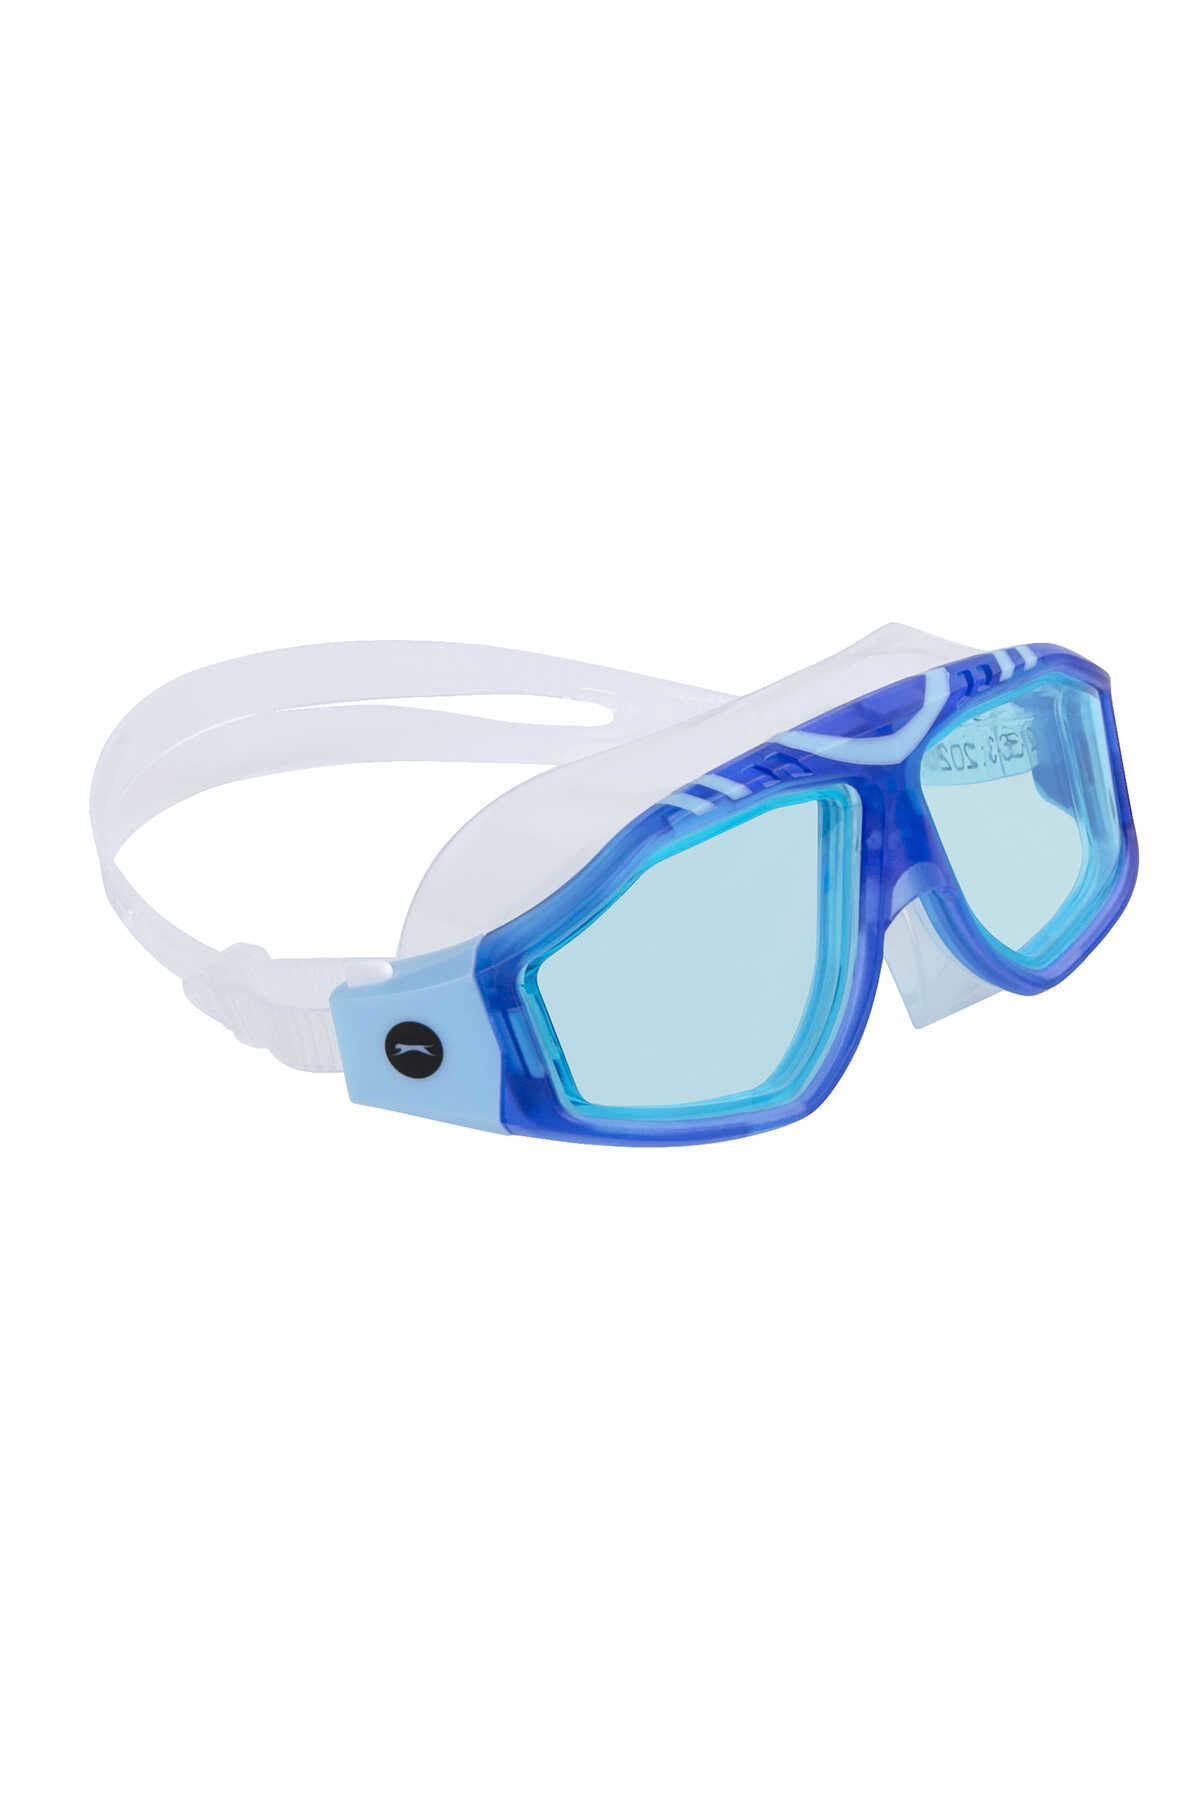 Slazenger - Slazenger GL6 Unisex Yüzücü Gözlüğü Mavi